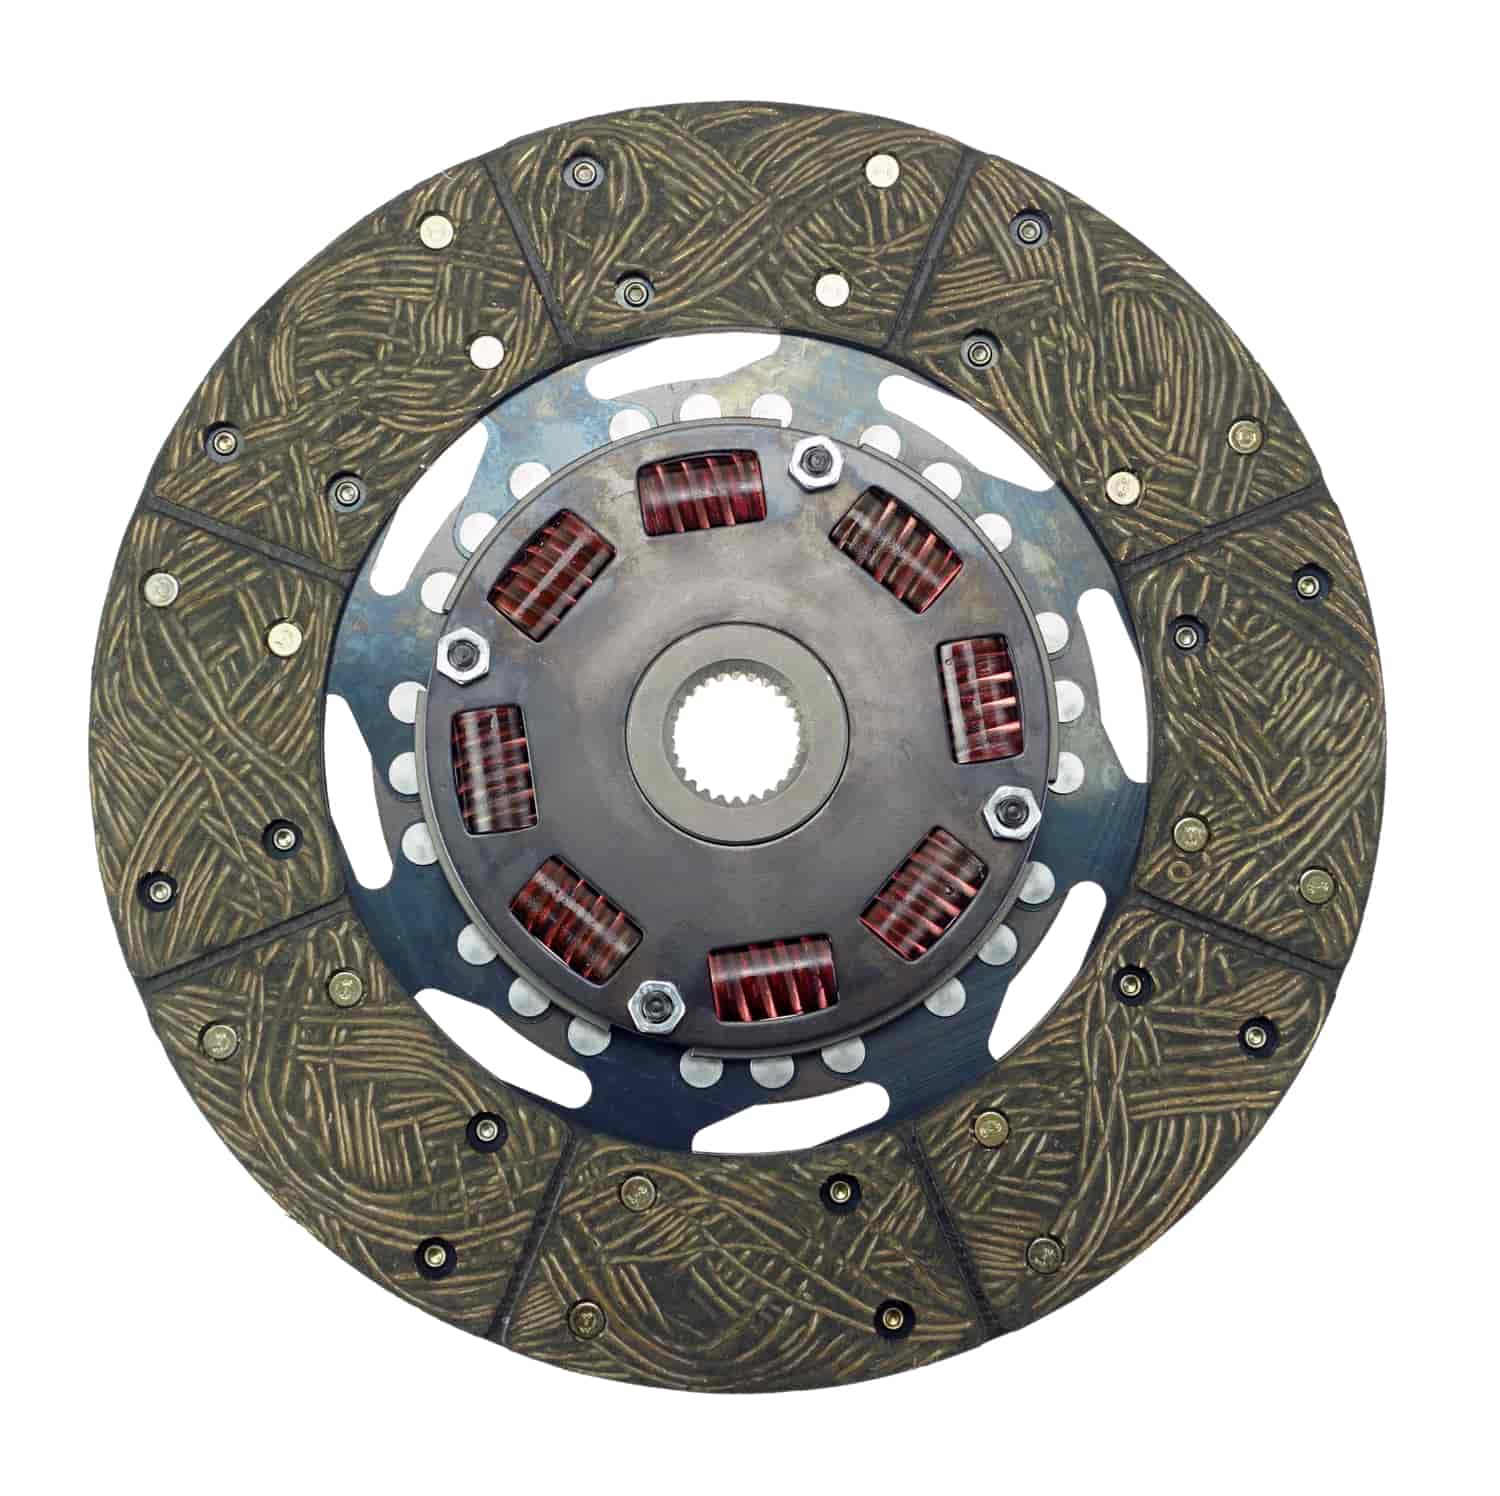 300 Series Sprung Center Clutch Disc 11" Diameter